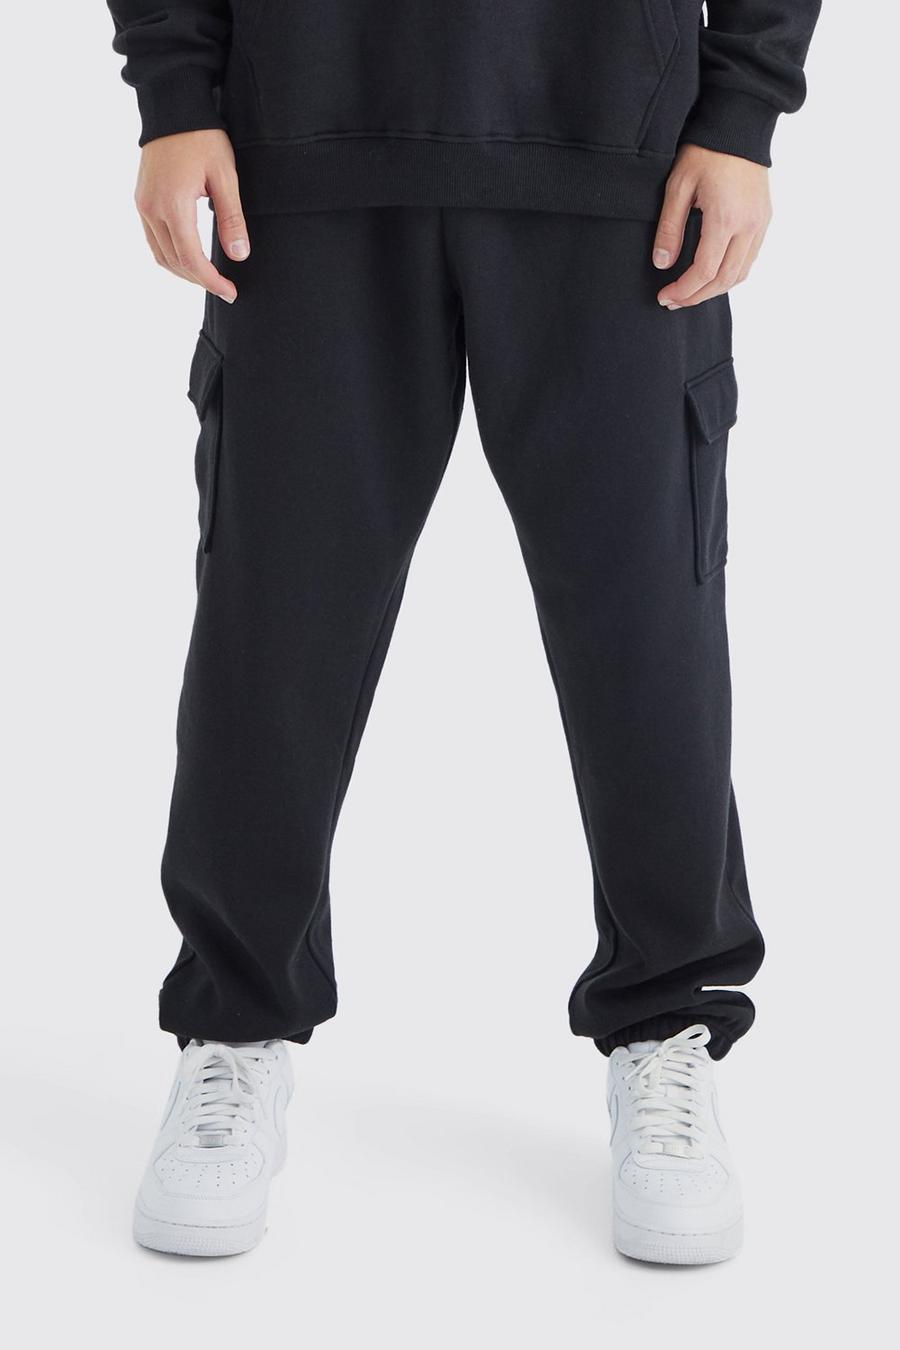 Pantaloni tuta Cargo Basic oversize, Black